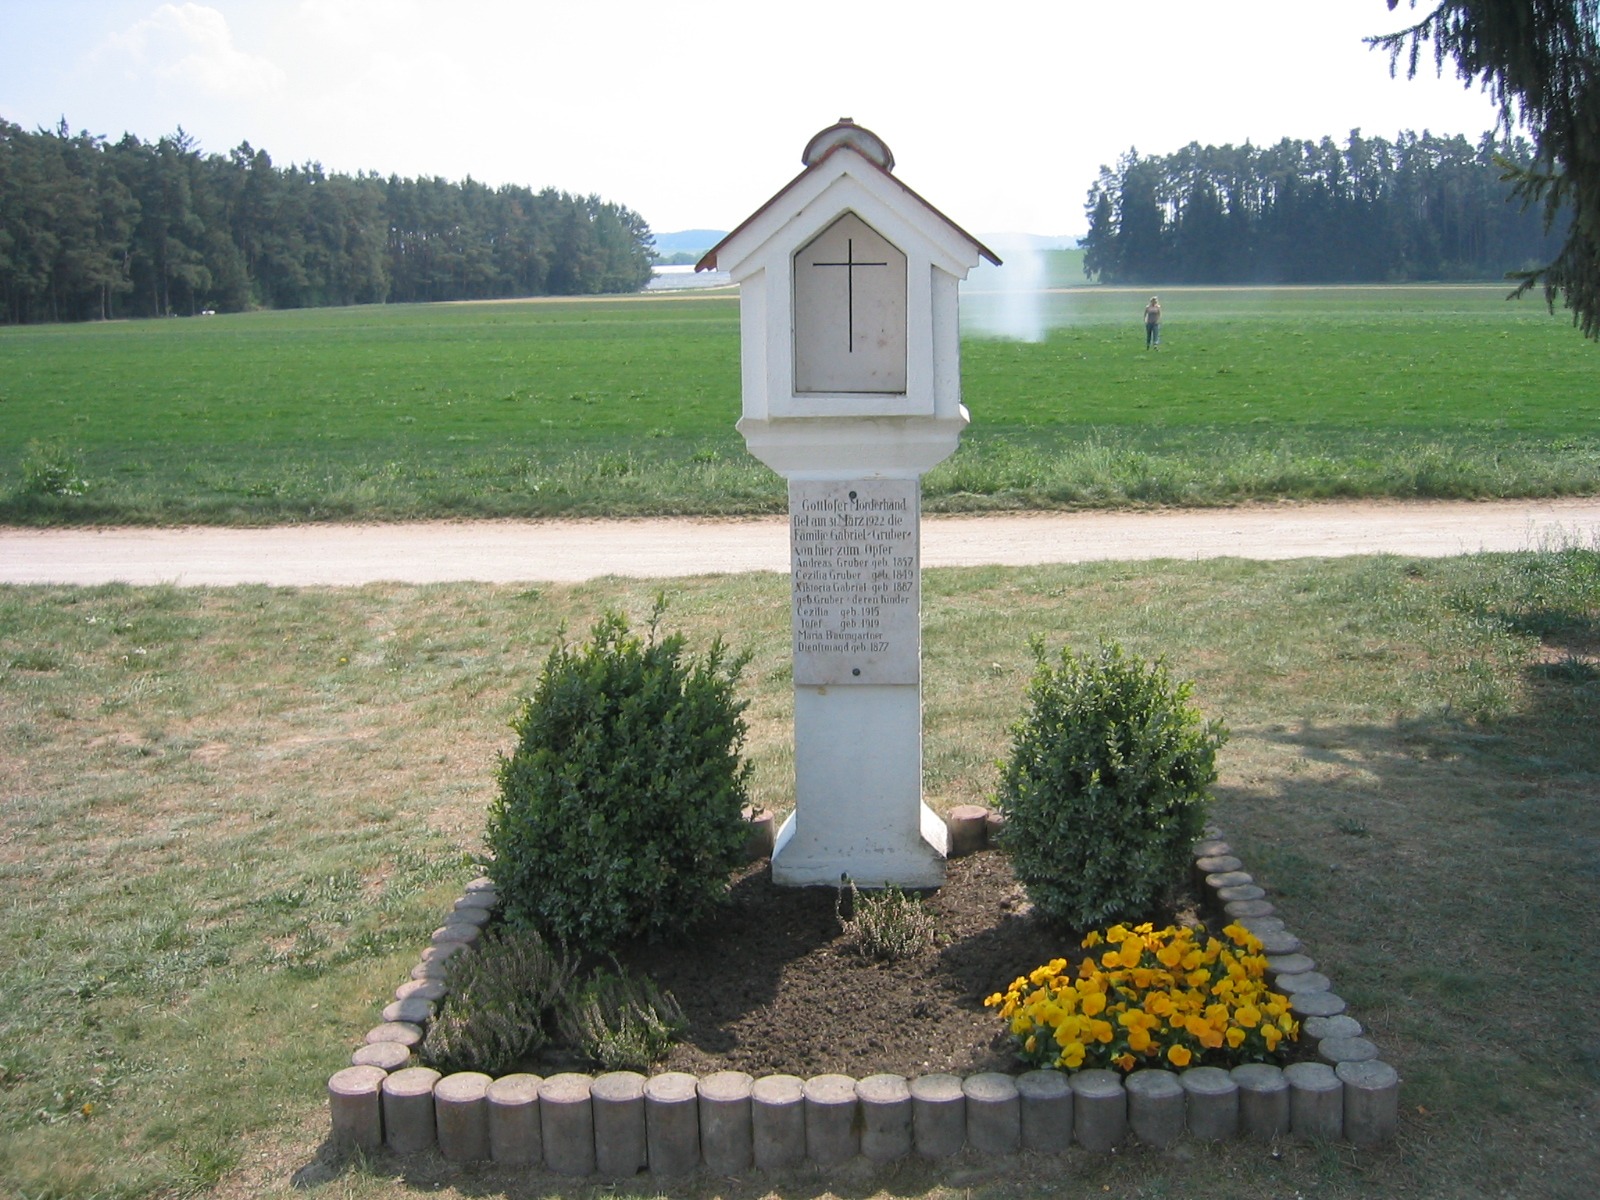 The Hinterkaifeck memorial.